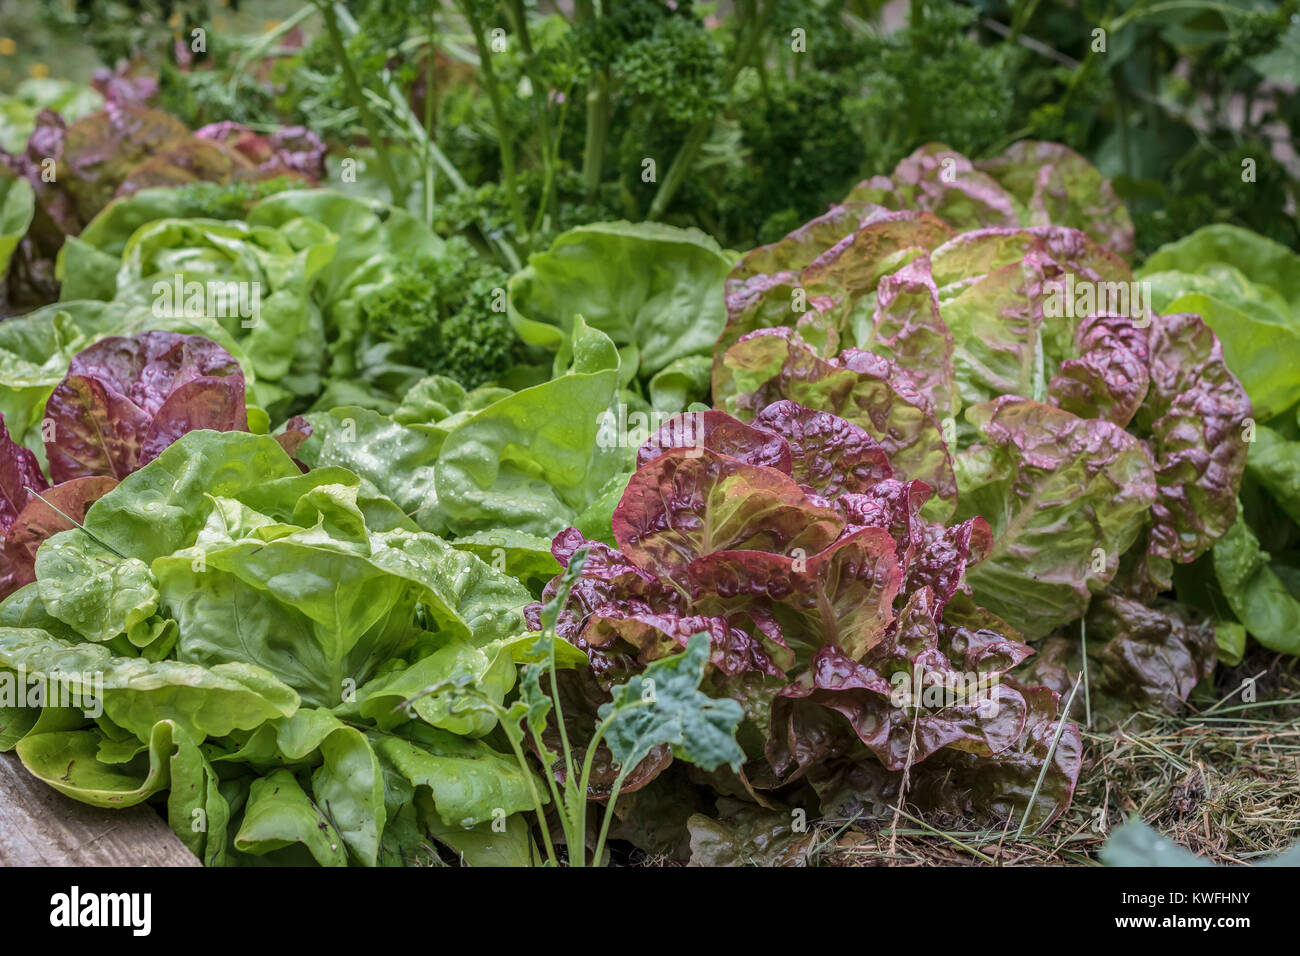 Rouge et vert humide variétés de laitues pommées laitues poussent densément dans un jardin (coin de bois surélevée visible en bas à gauche). Banque D'Images